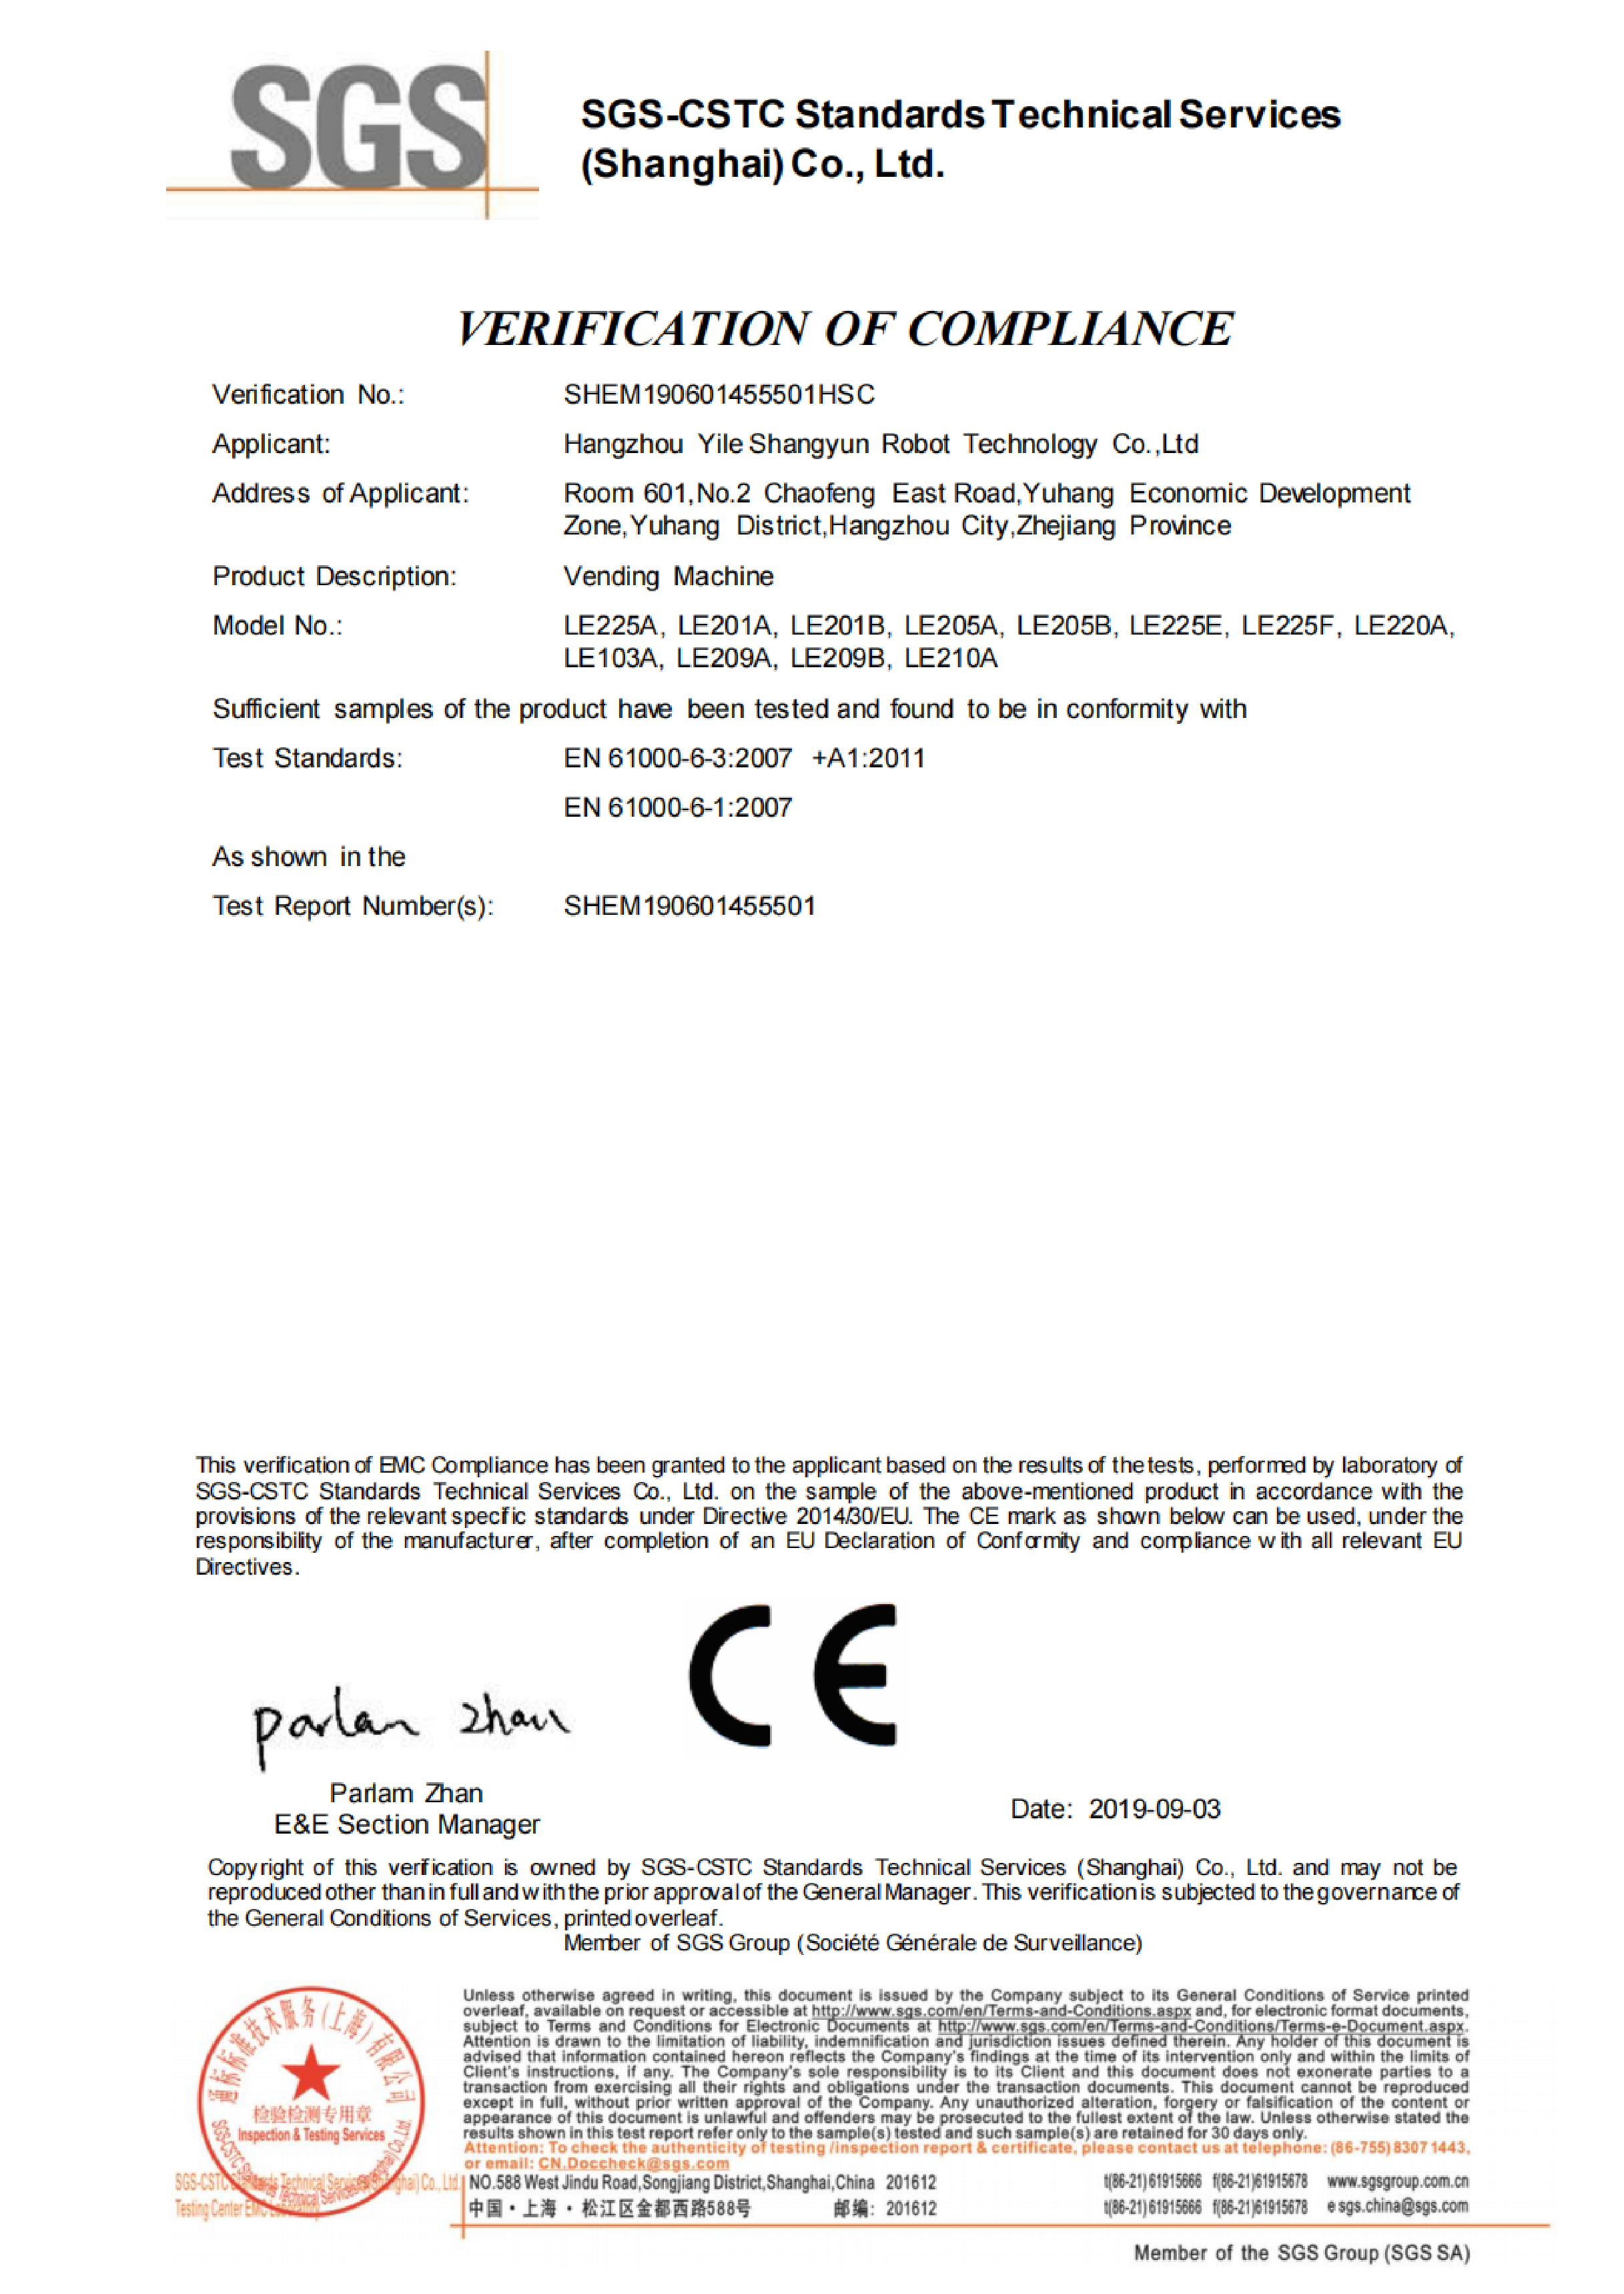 售货机CE证书